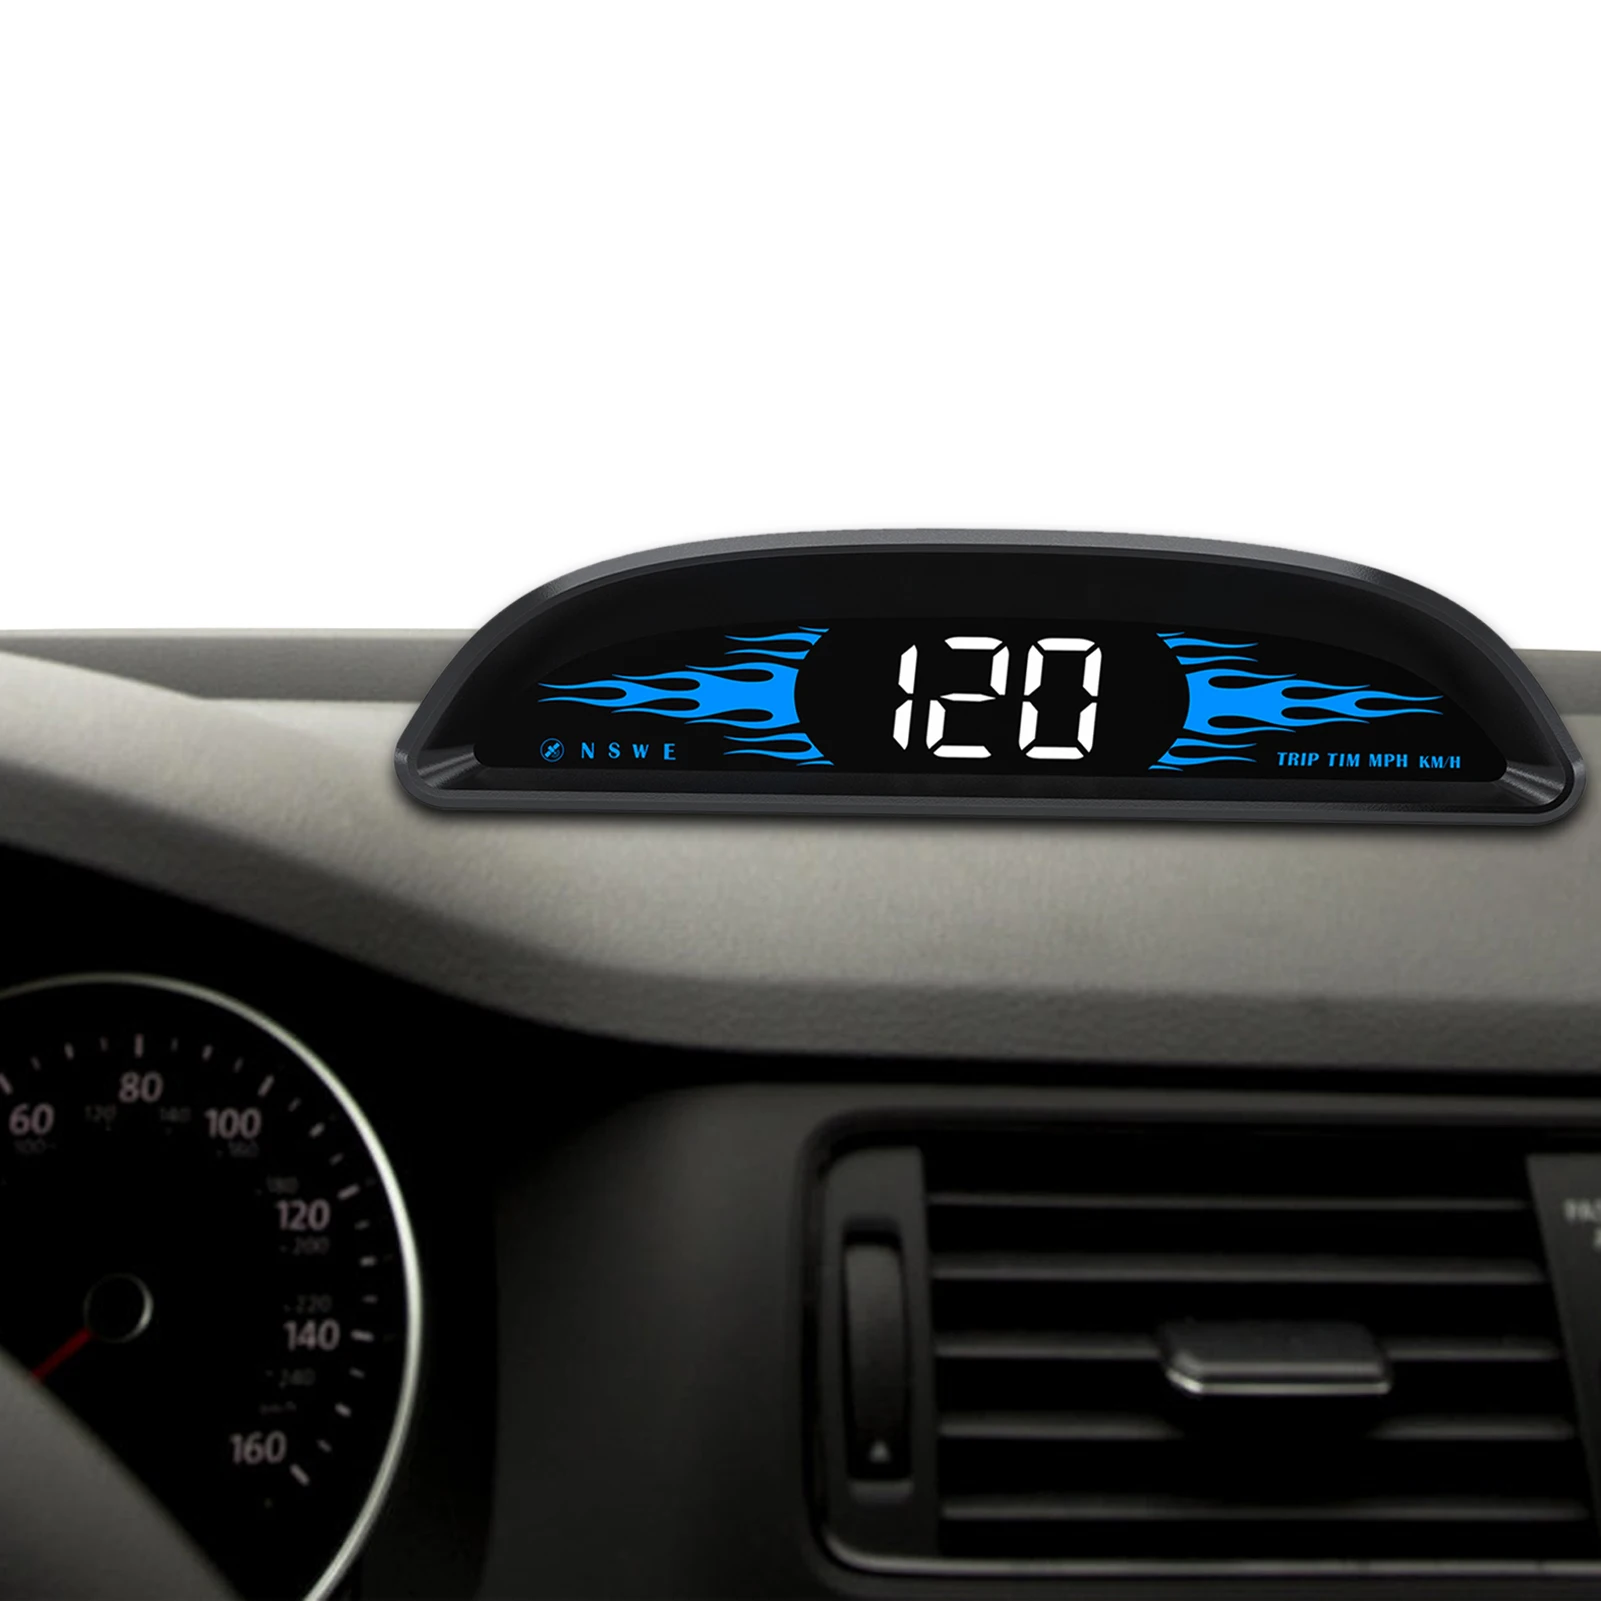 

Автомобильный дисплей на лобовом стекле Универсальный Hud GPS Спидометр Предупреждение ением о превышении скорости OBD температура воды для ав...